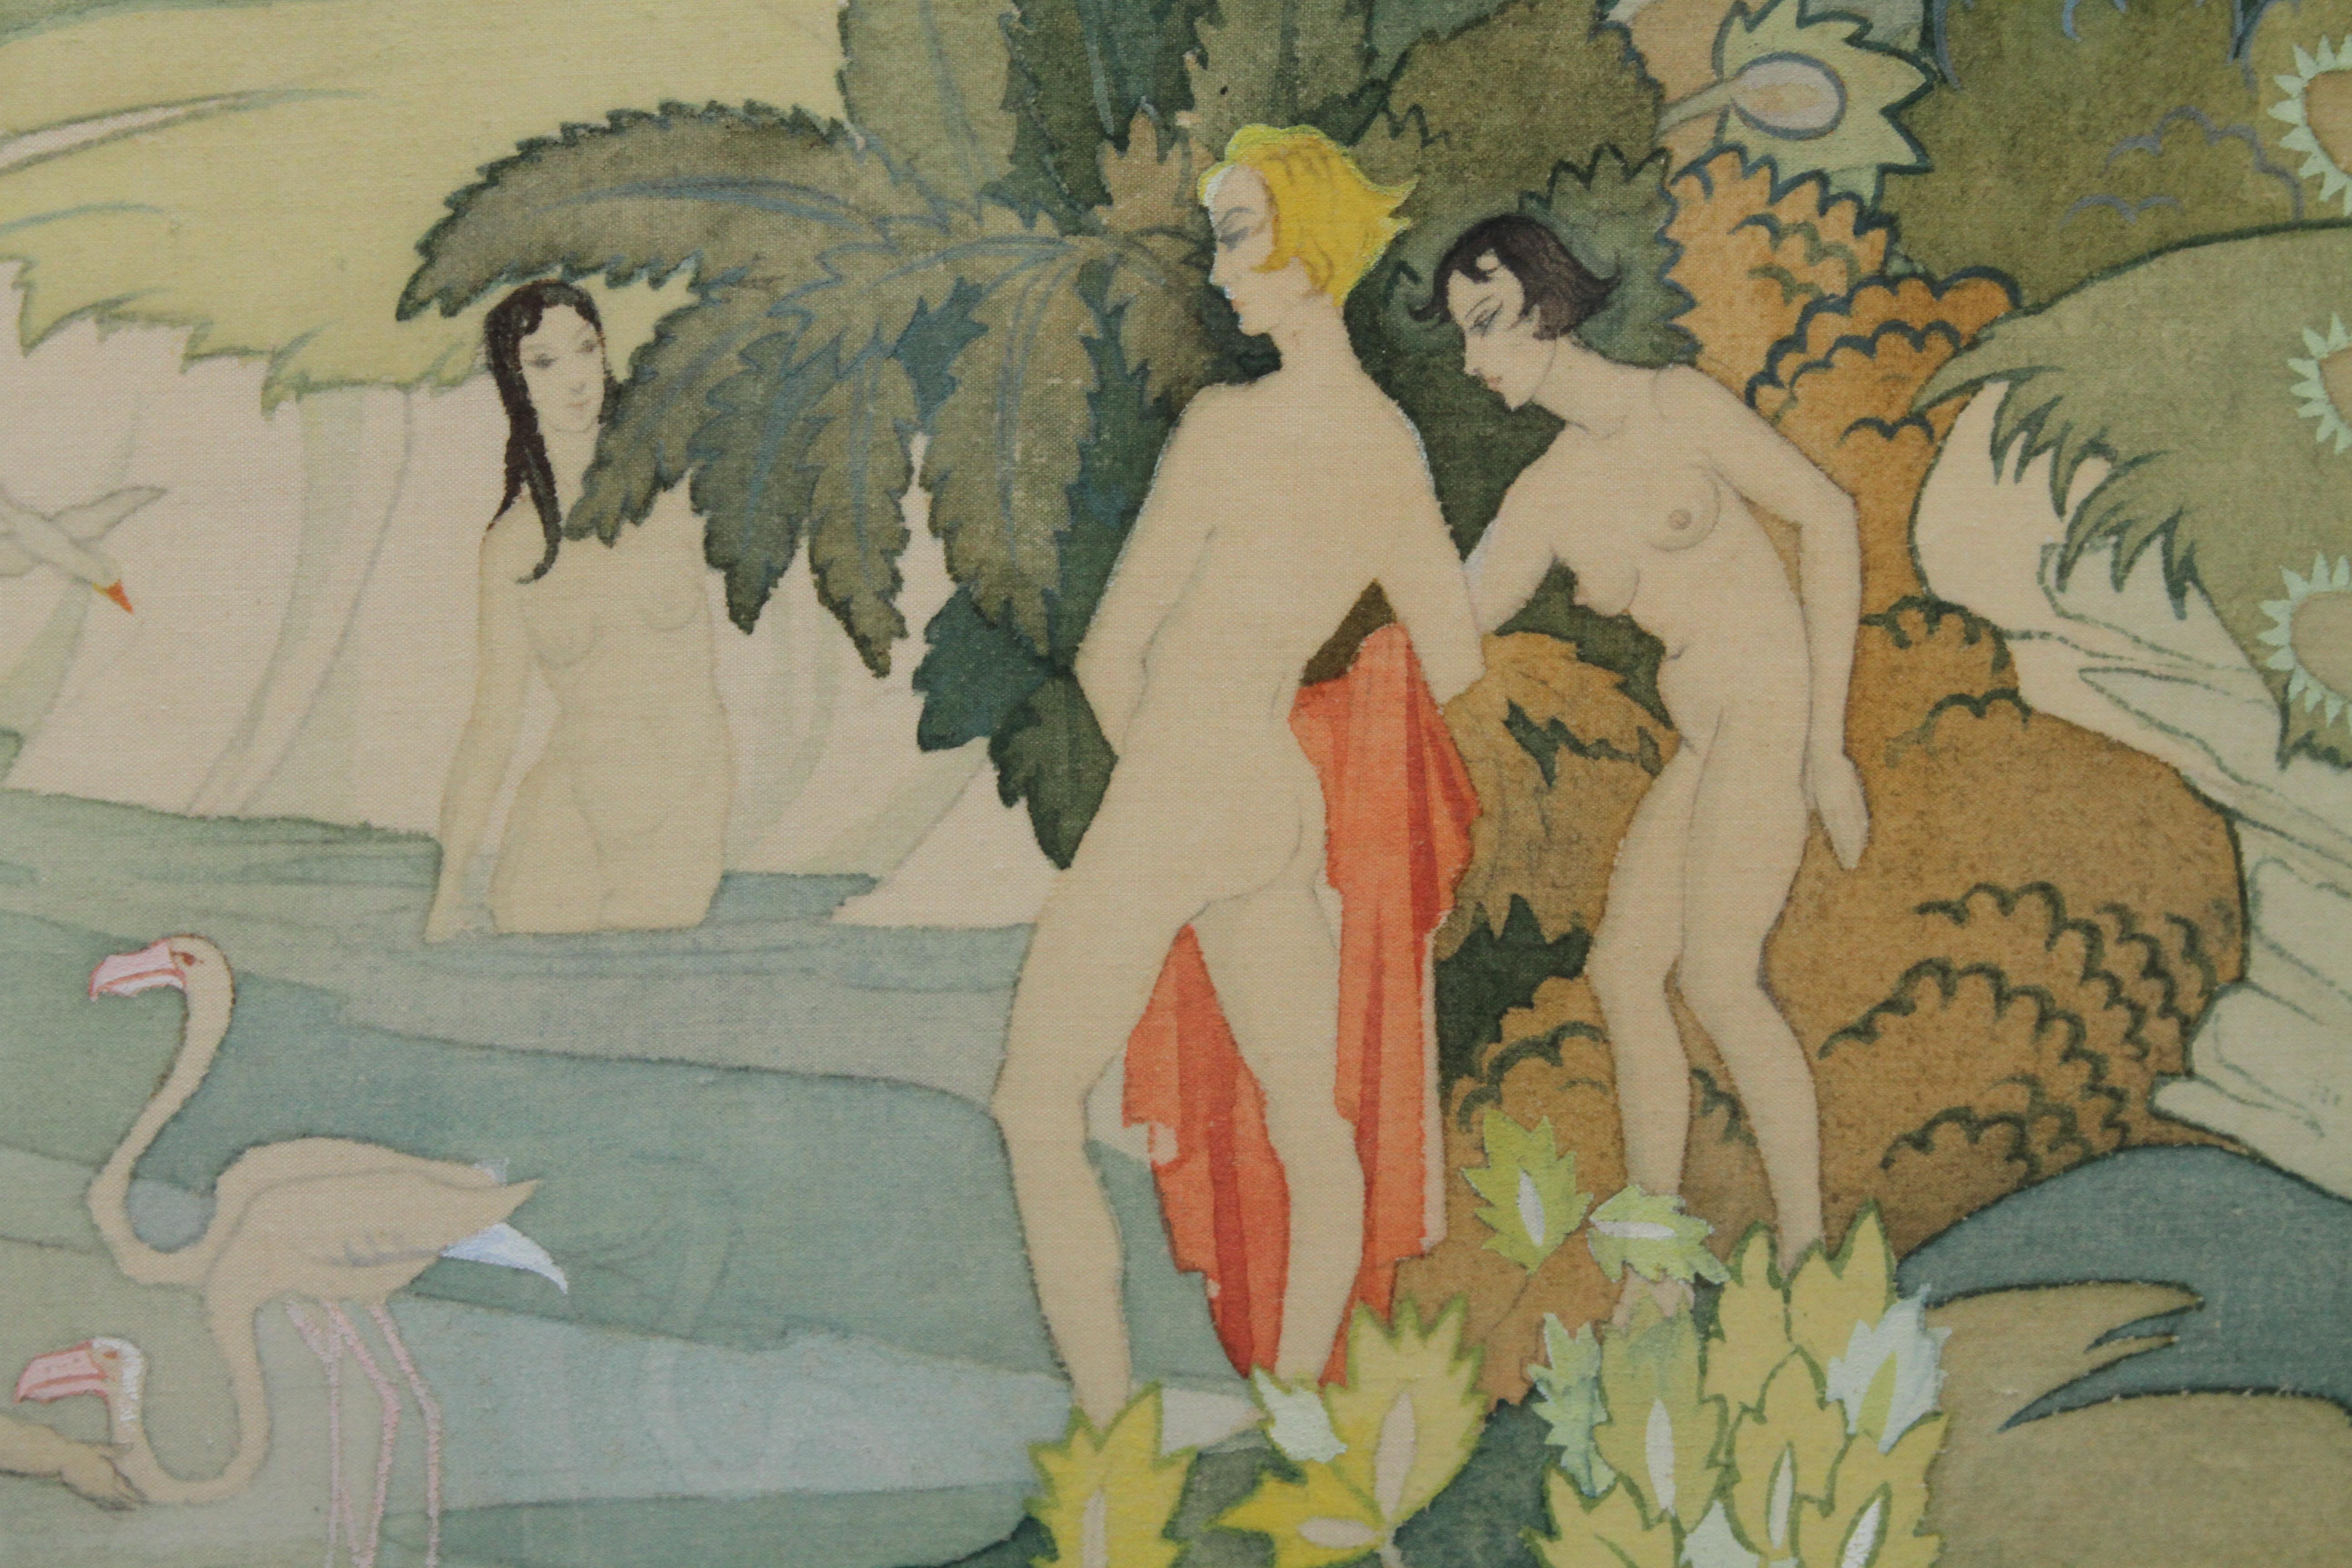 Dieses schöne, zarte und detailreiche Aquarell auf Seide ist ein Werk der britischen Künstlerin Ann Haywood. Es handelt sich um ein ausgestelltes Werk aus dem Jahr 1933, das in der Royal Academy unter dem Titel The River Nymphs ausgestellt wurde.